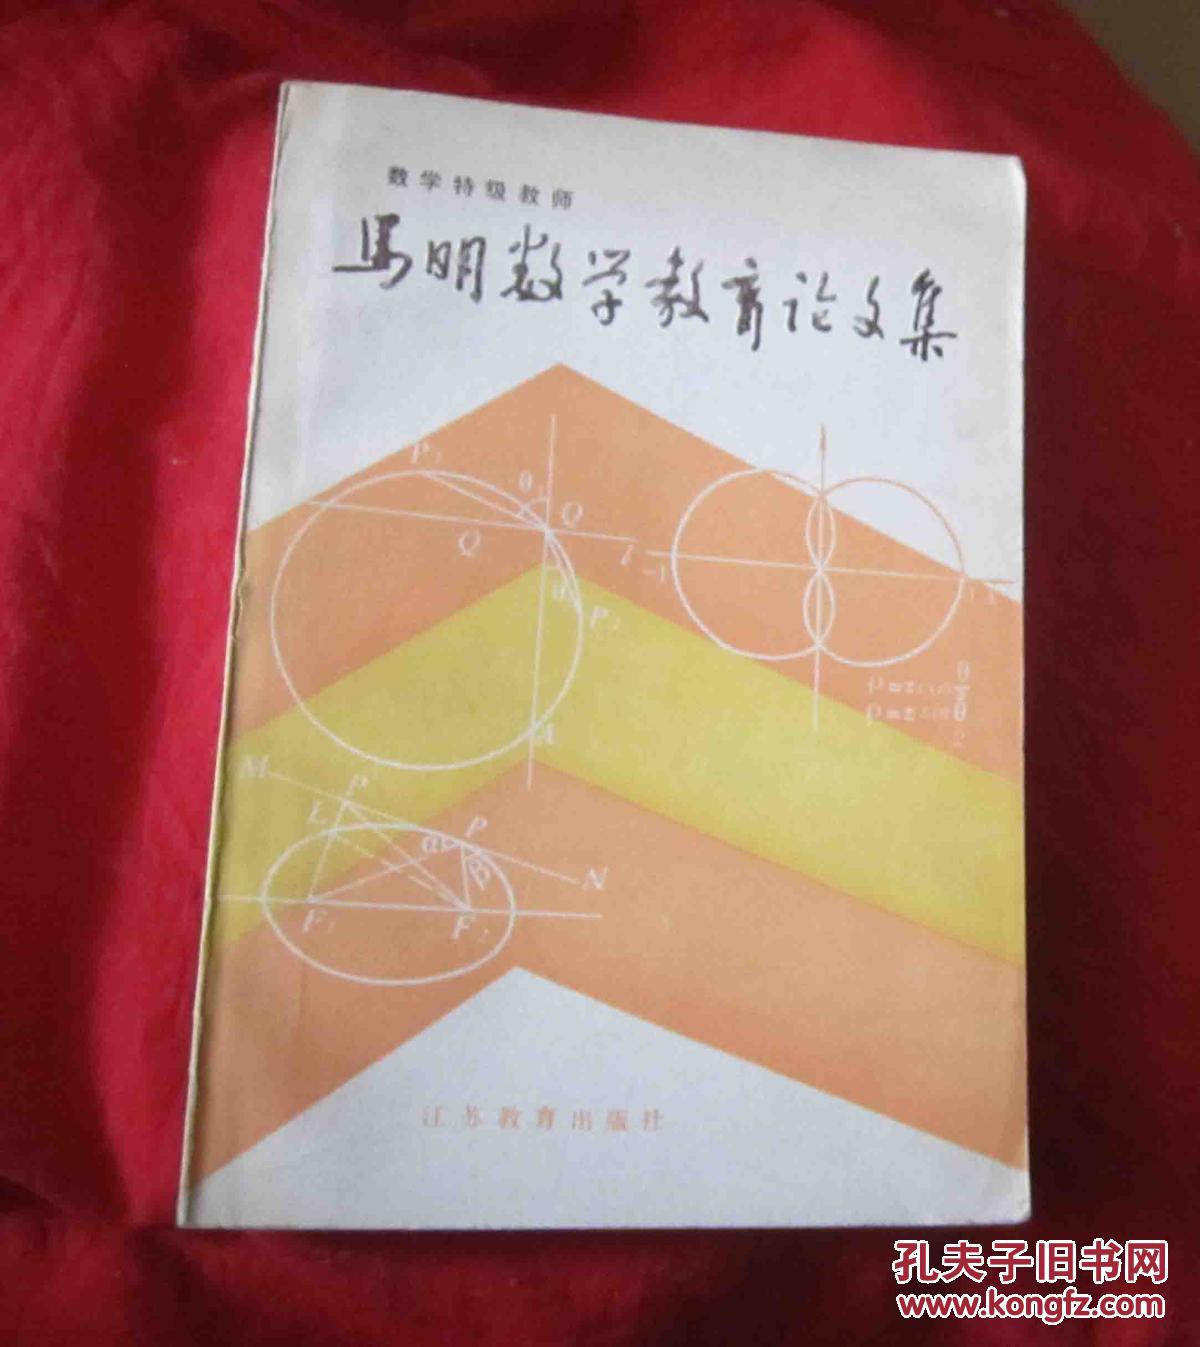 【图】马明数学教育论文集_江苏教育出版社